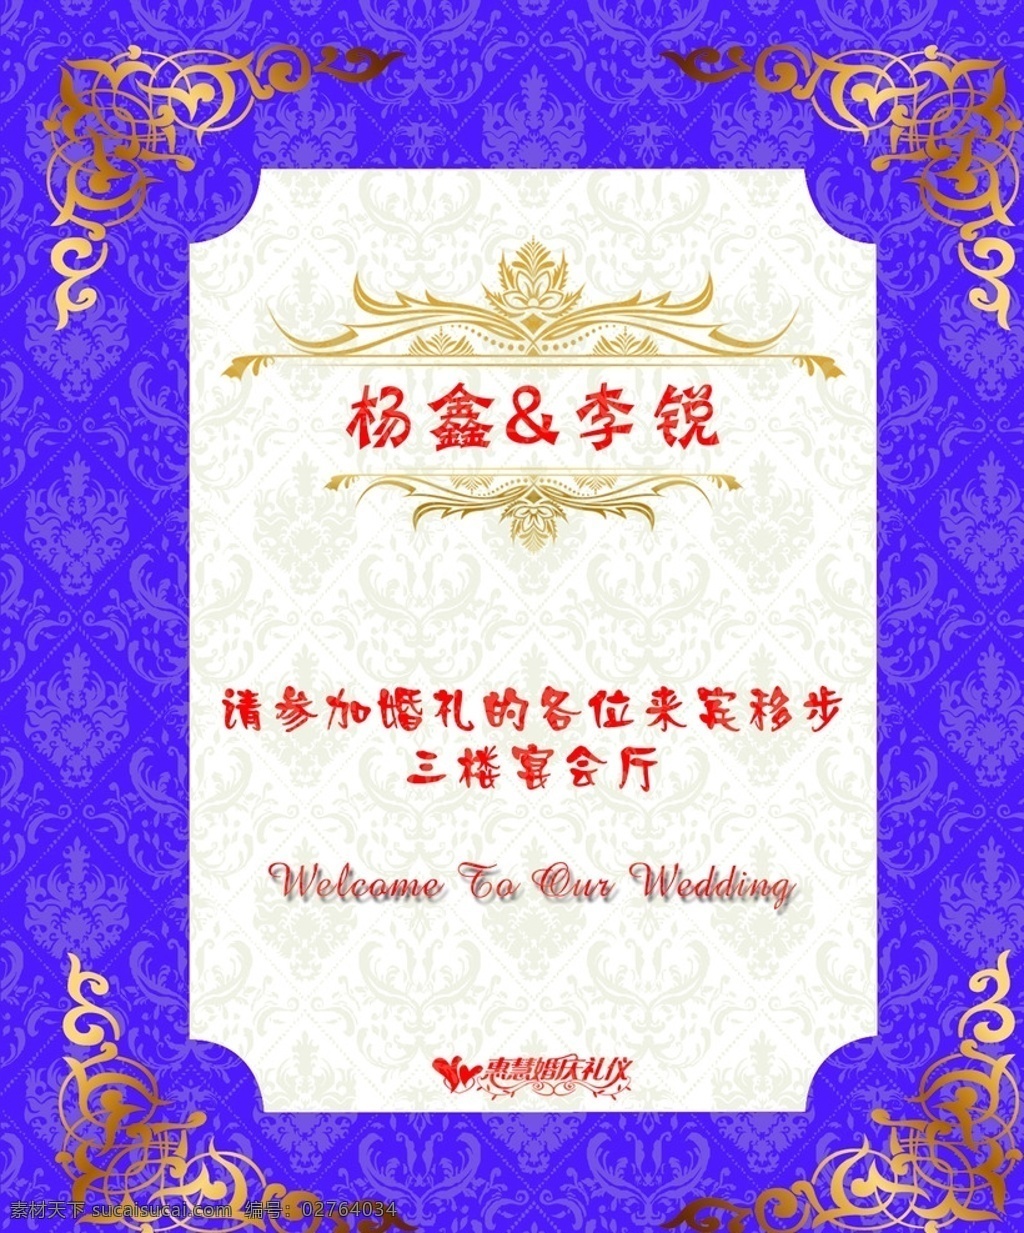 紫色 婚庆 引导牌 底纹 欧式花纹 水牌 迎宾水牌 迎宾牌 婚礼 展板模板